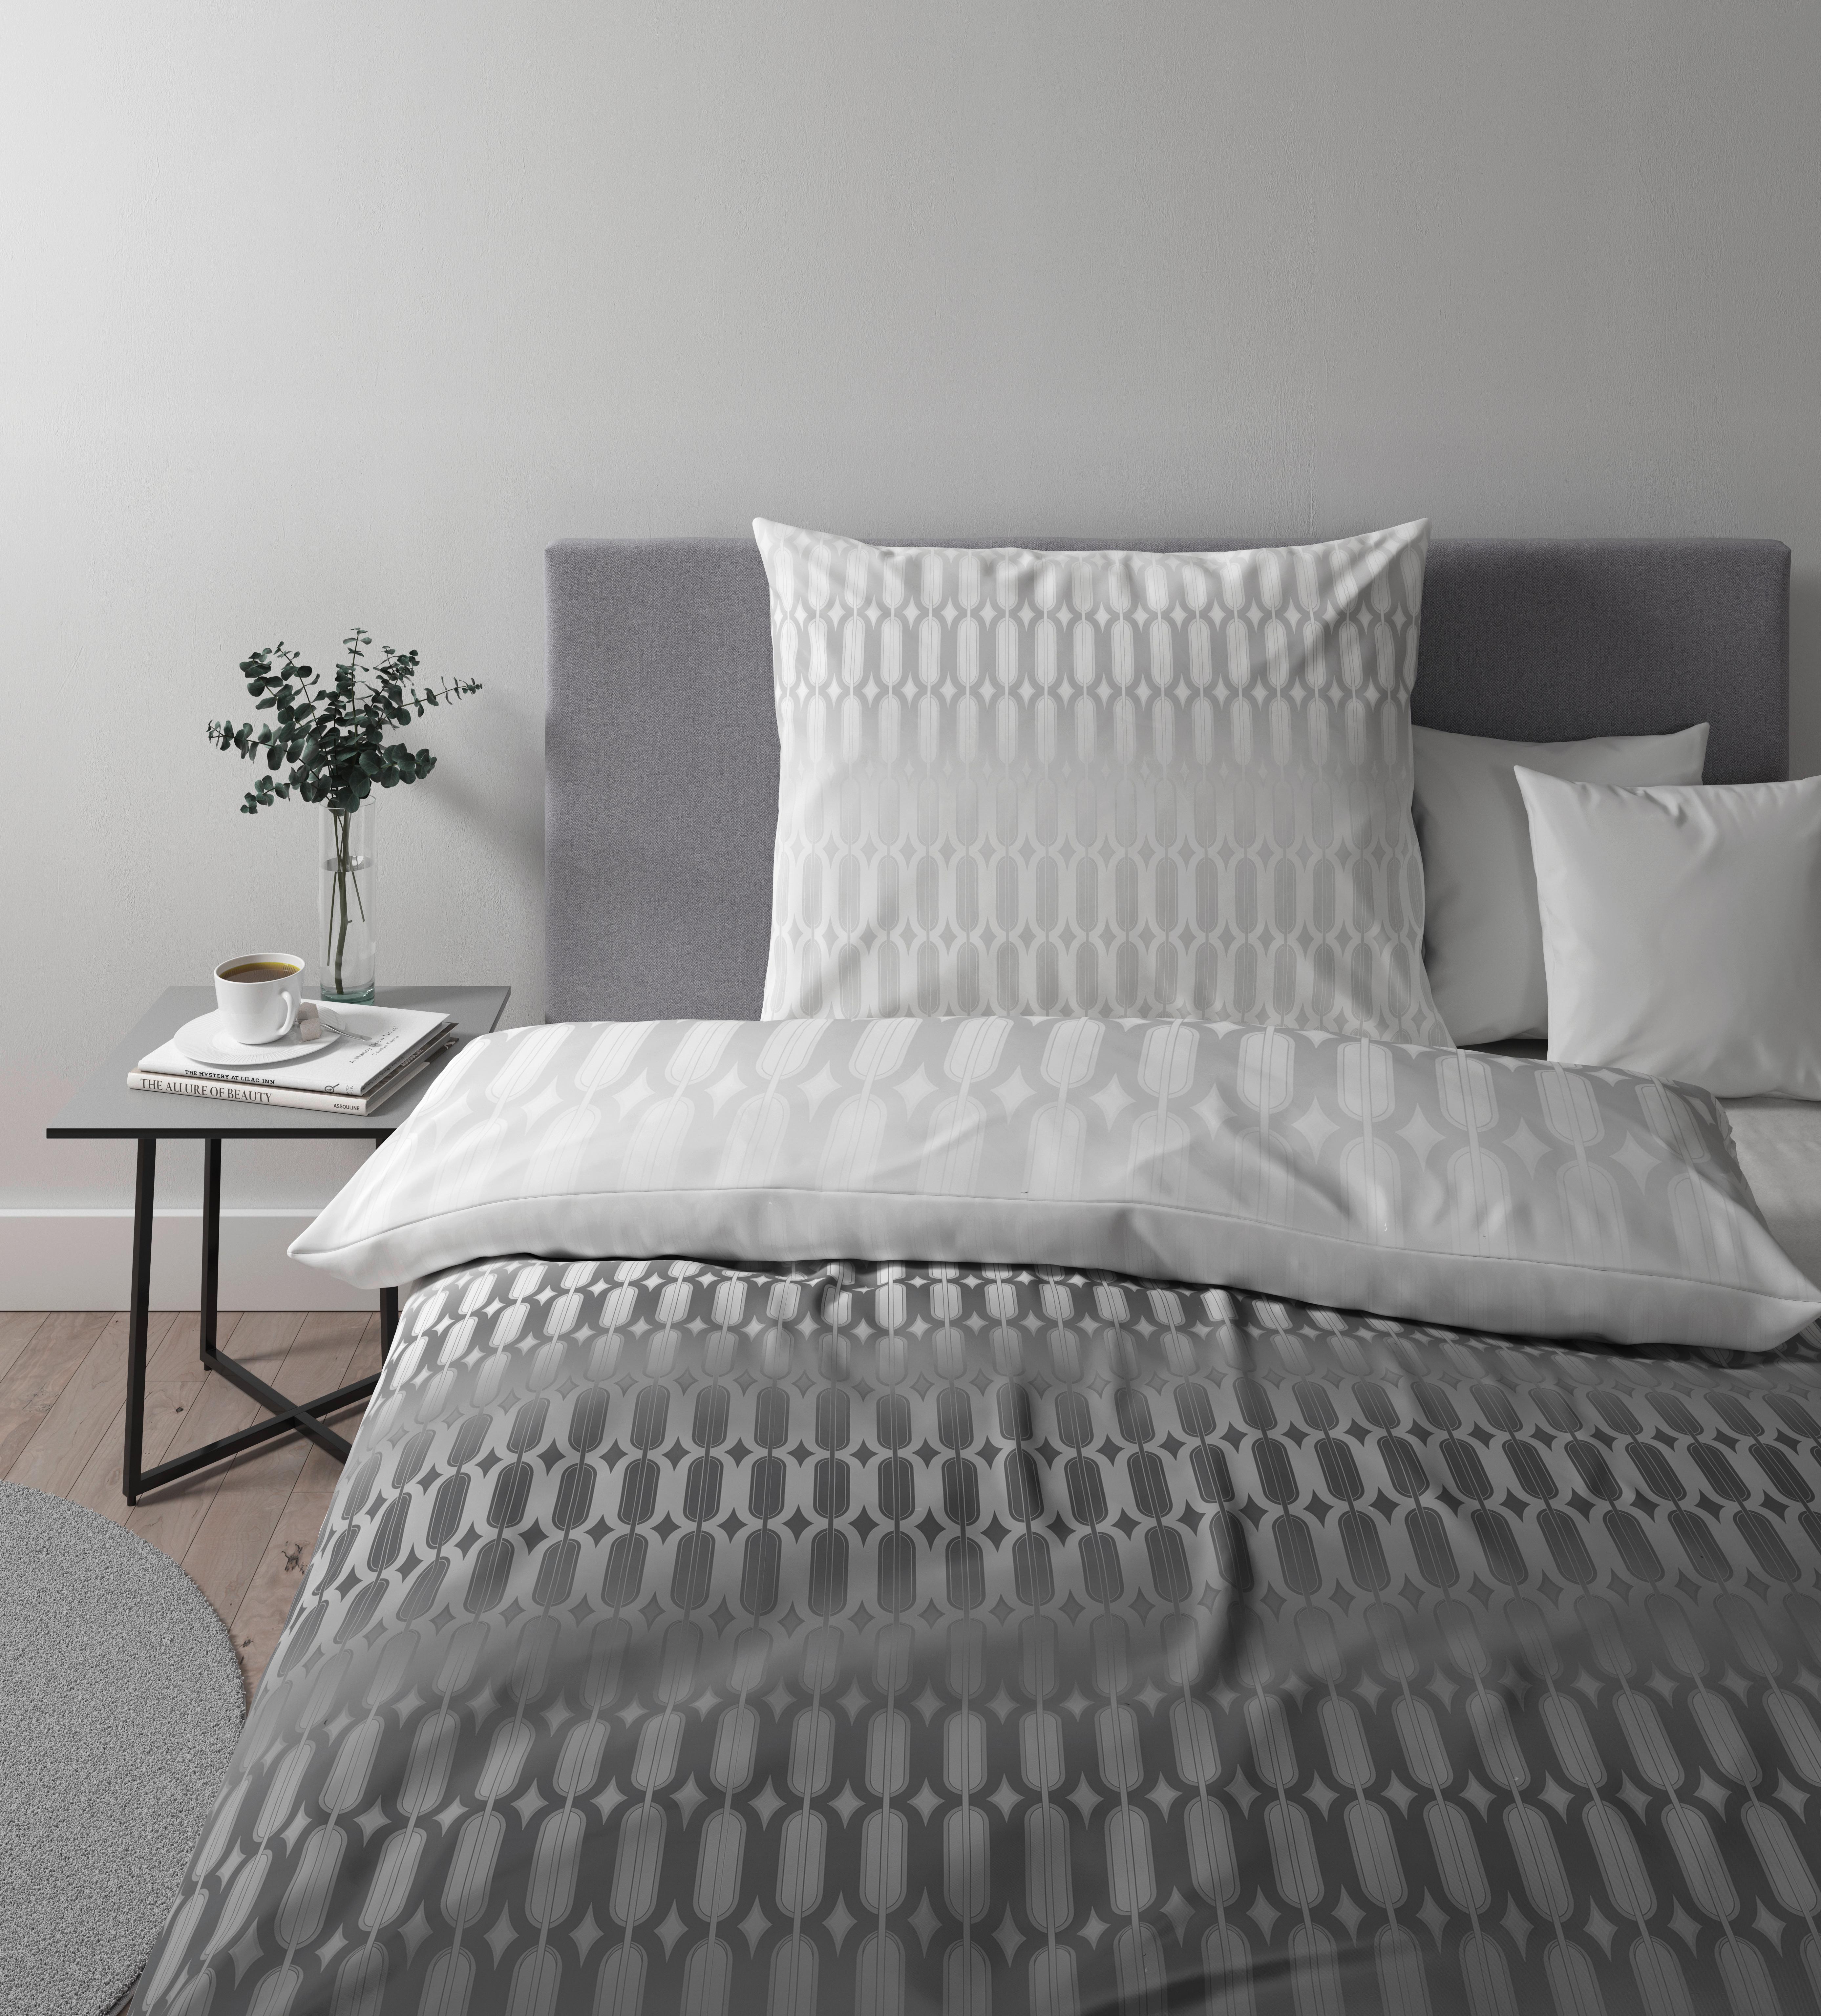 Posteljnina Picol - srebrne barve/siva, Moderno, tekstil (140/200cm) - Premium Living